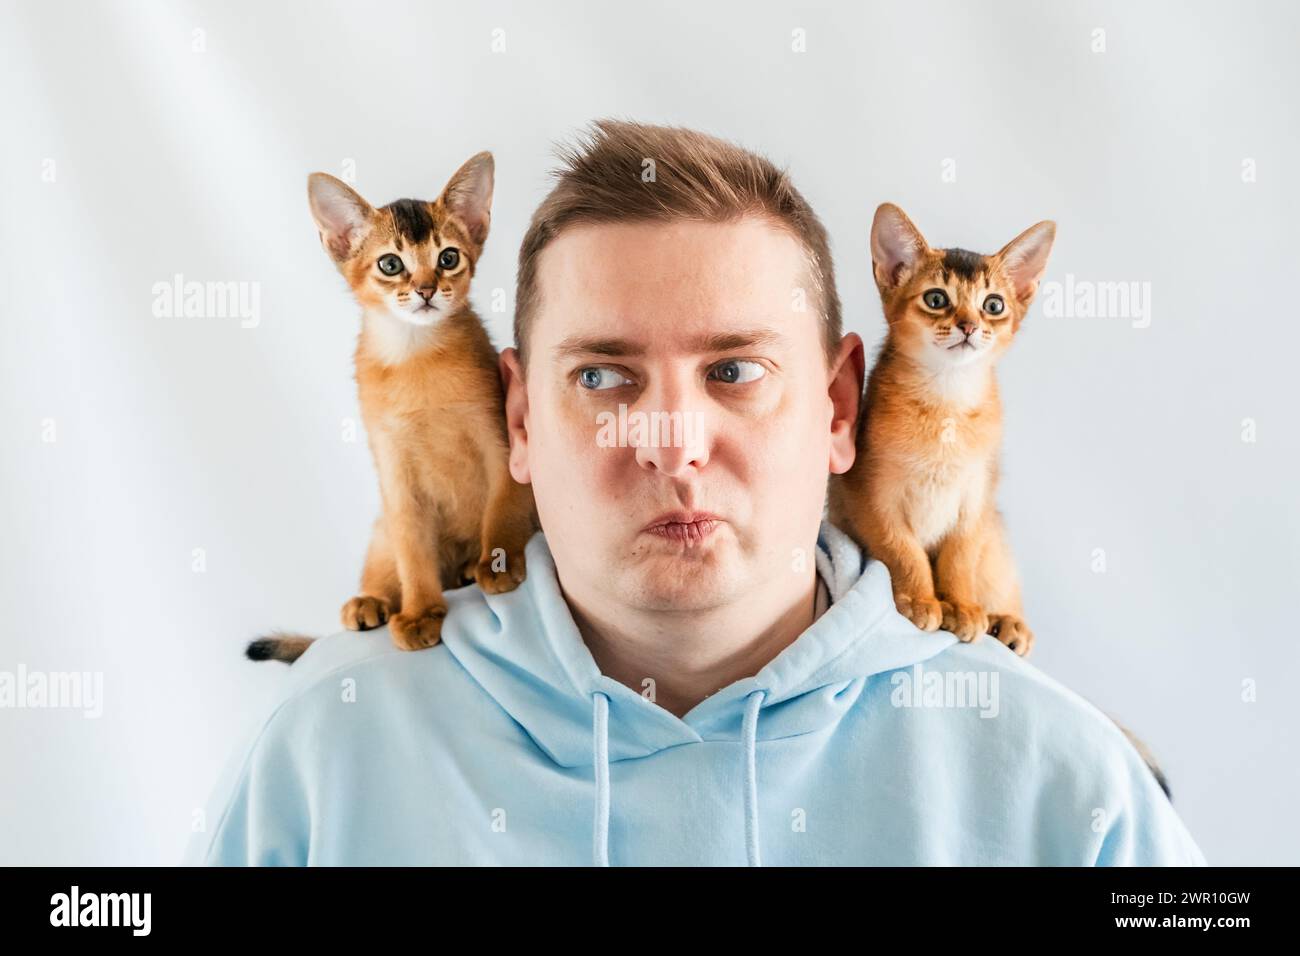 Sourire drôle homme en sweat à capuche bleu avec des chats jumeaux abyssiniens, petits chatons nouveau-nés assis sur les épaules. Fond blanc. Animaux heureux, moelleux domestique Banque D'Images